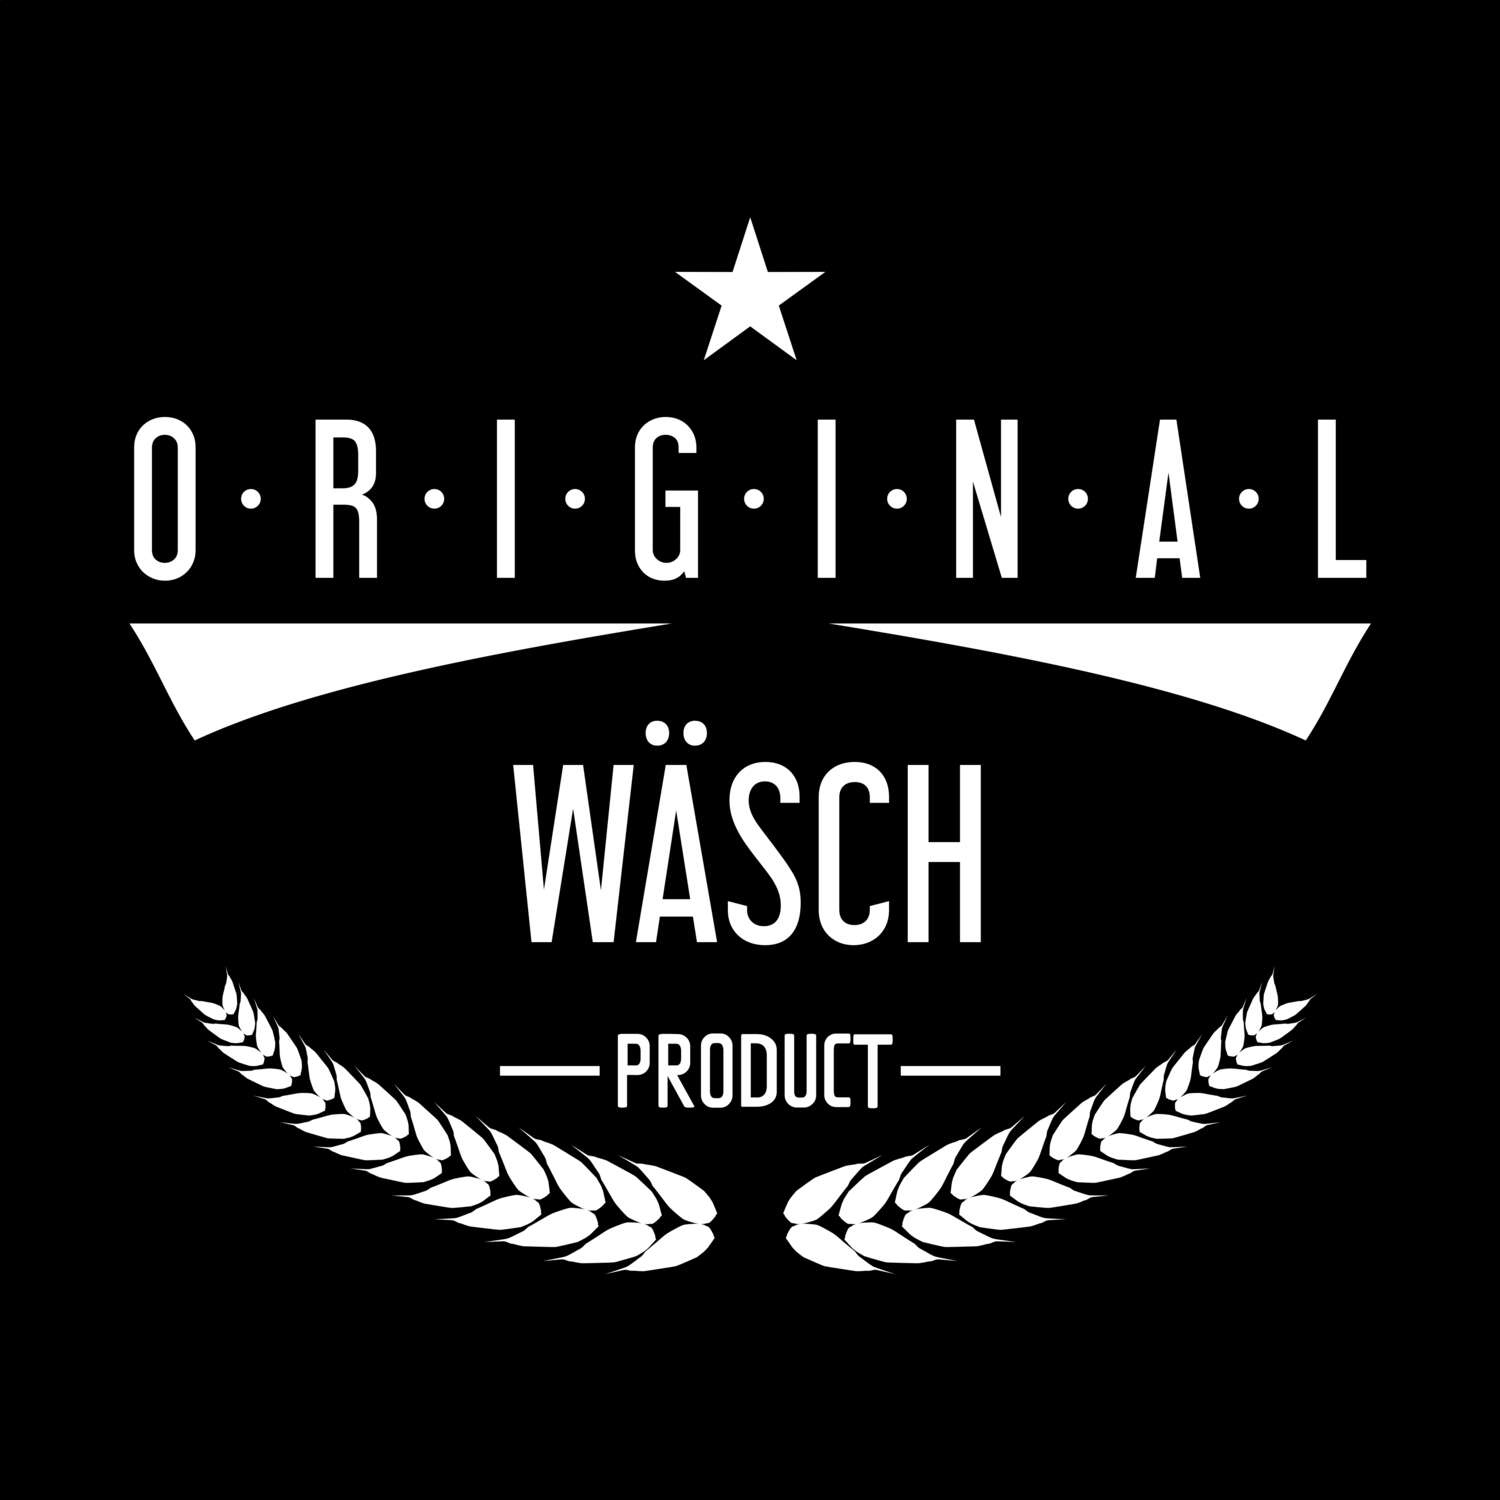 Wäsch T-Shirt »Original Product«